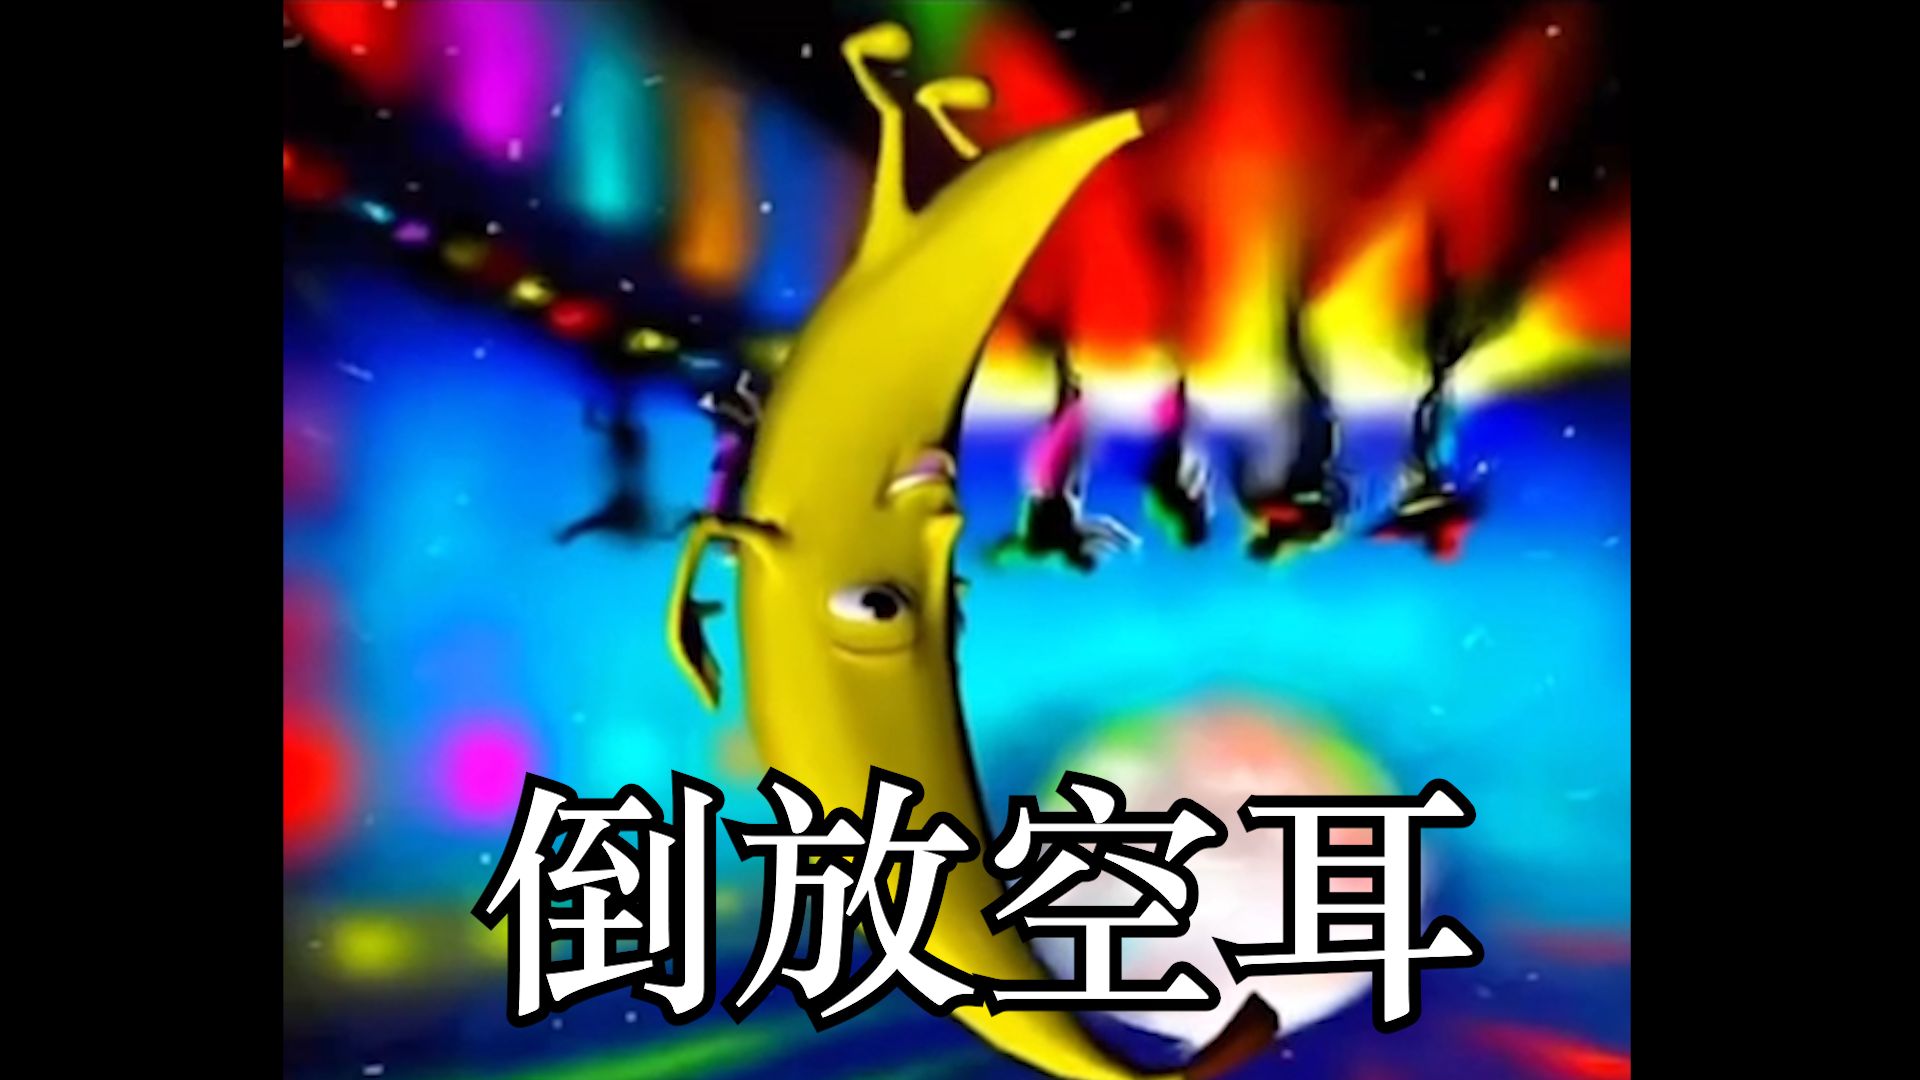 🍌大香蕉倒放空耳版🍌